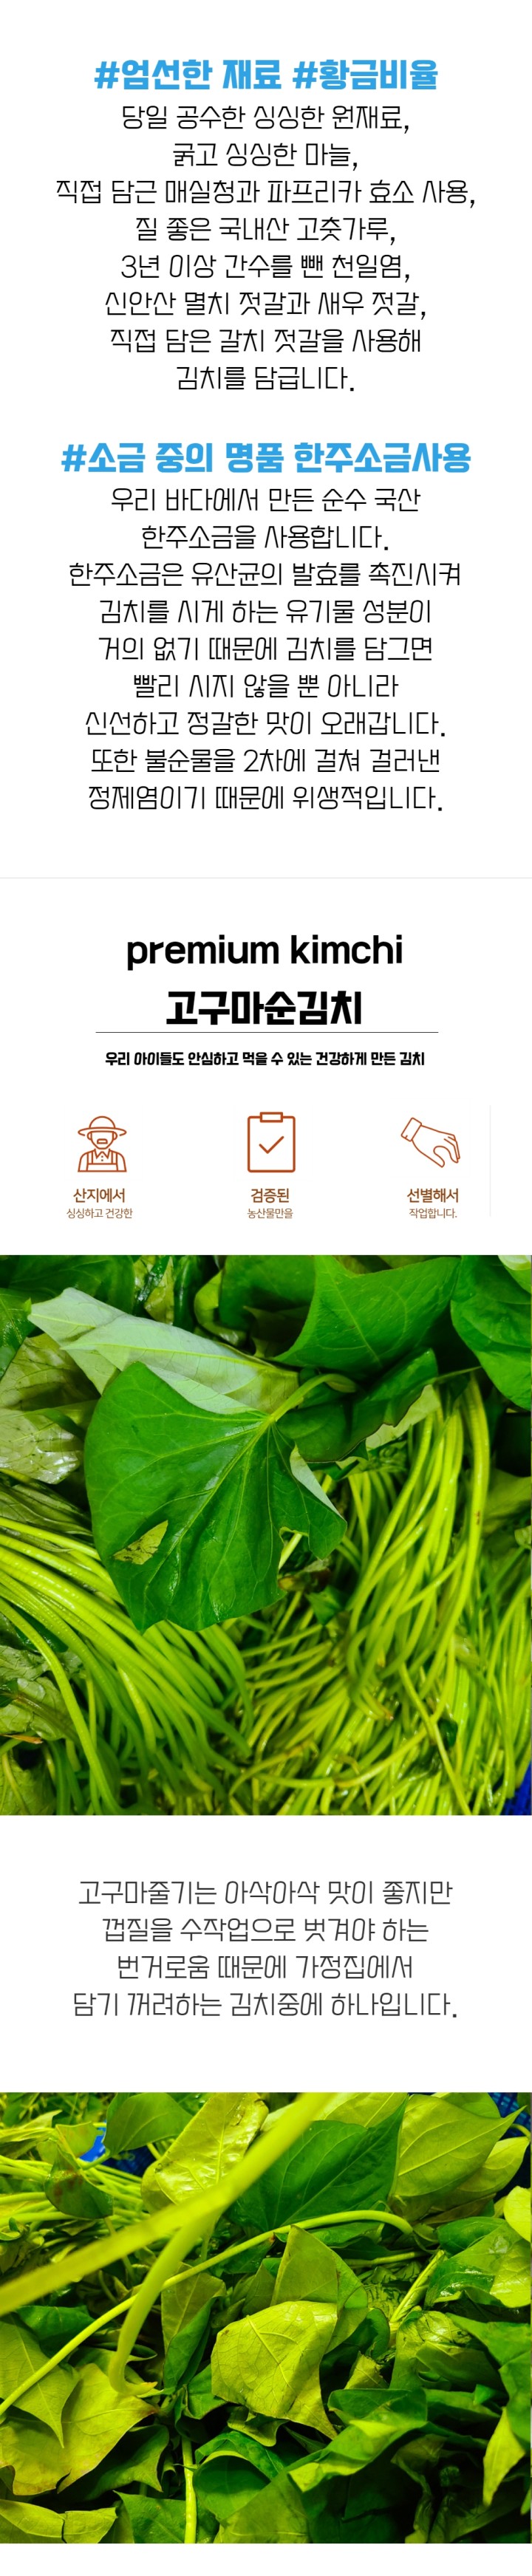 ❤️❤️ 국산 100% 고구마순(줄기)김치 ❤️❤️ | 아이디어스